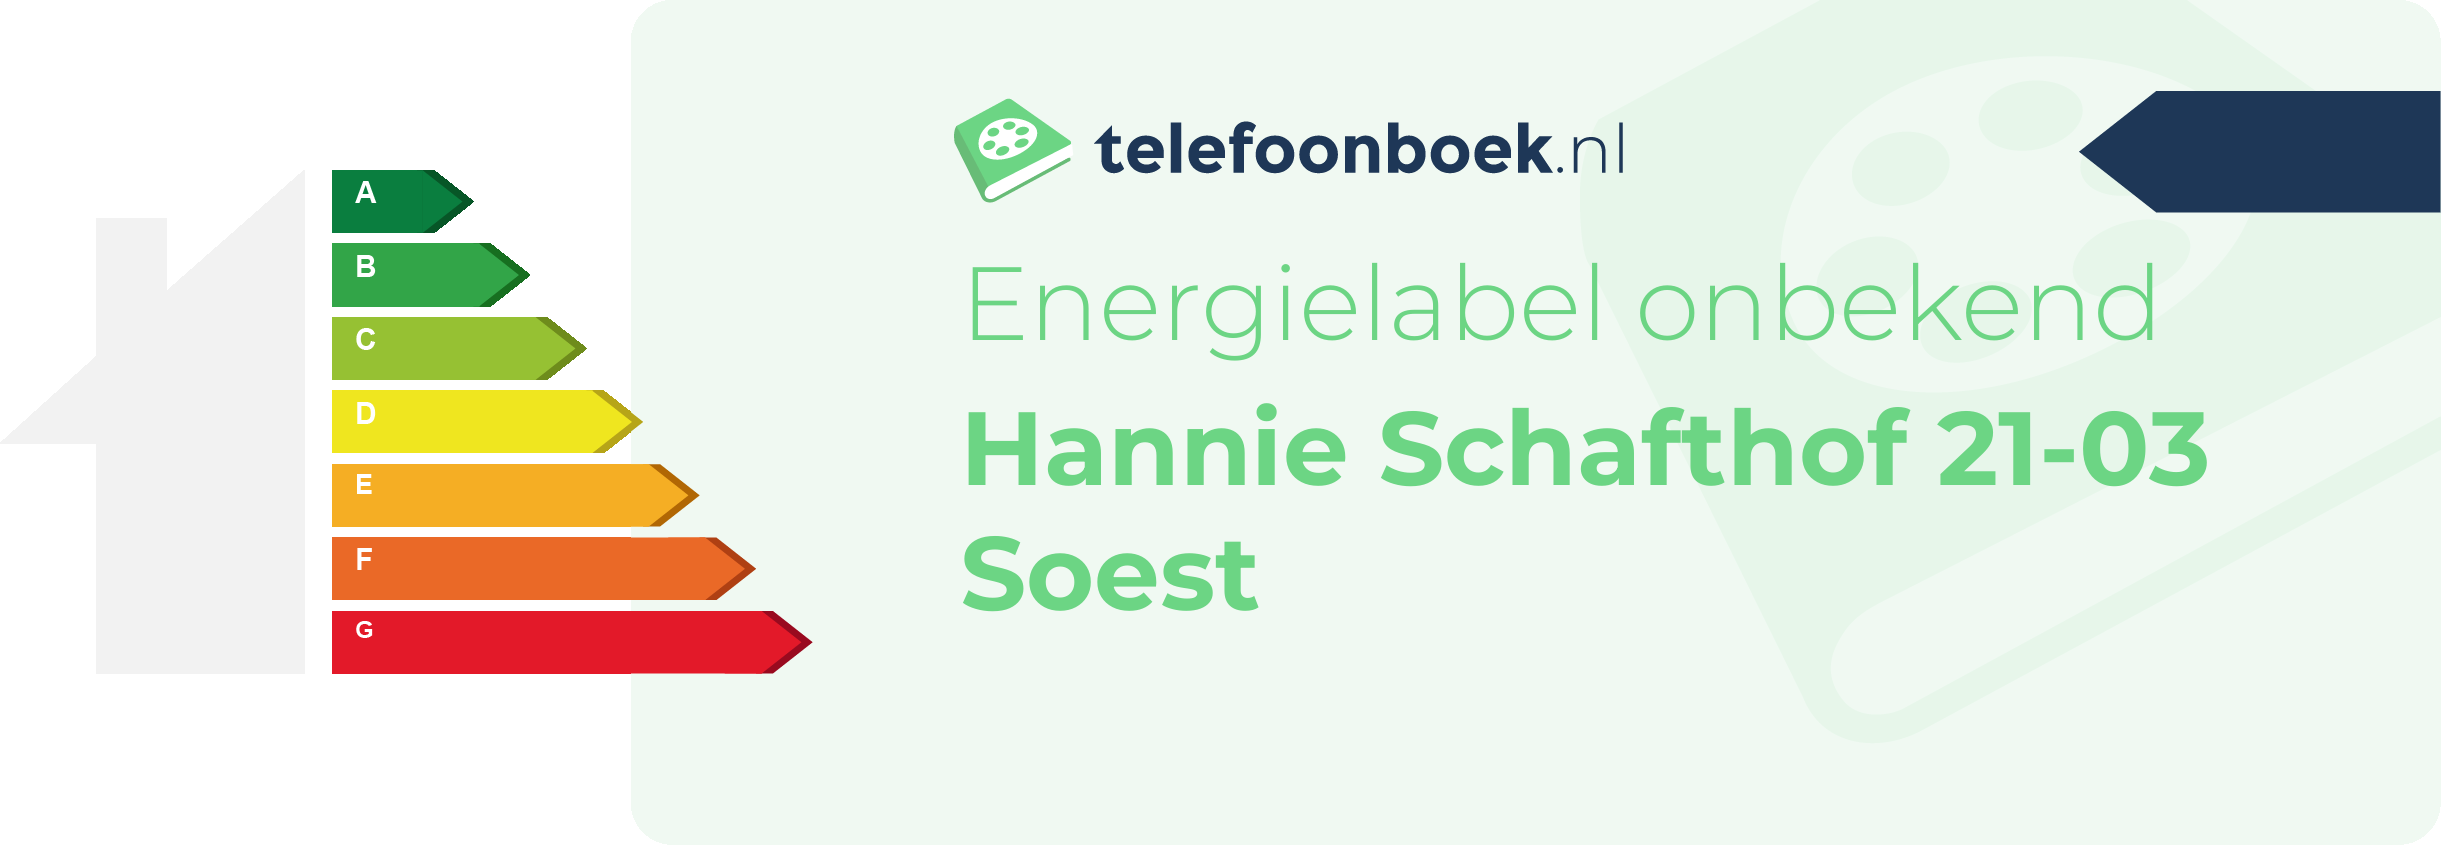 Energielabel Hannie Schafthof 21-03 Soest